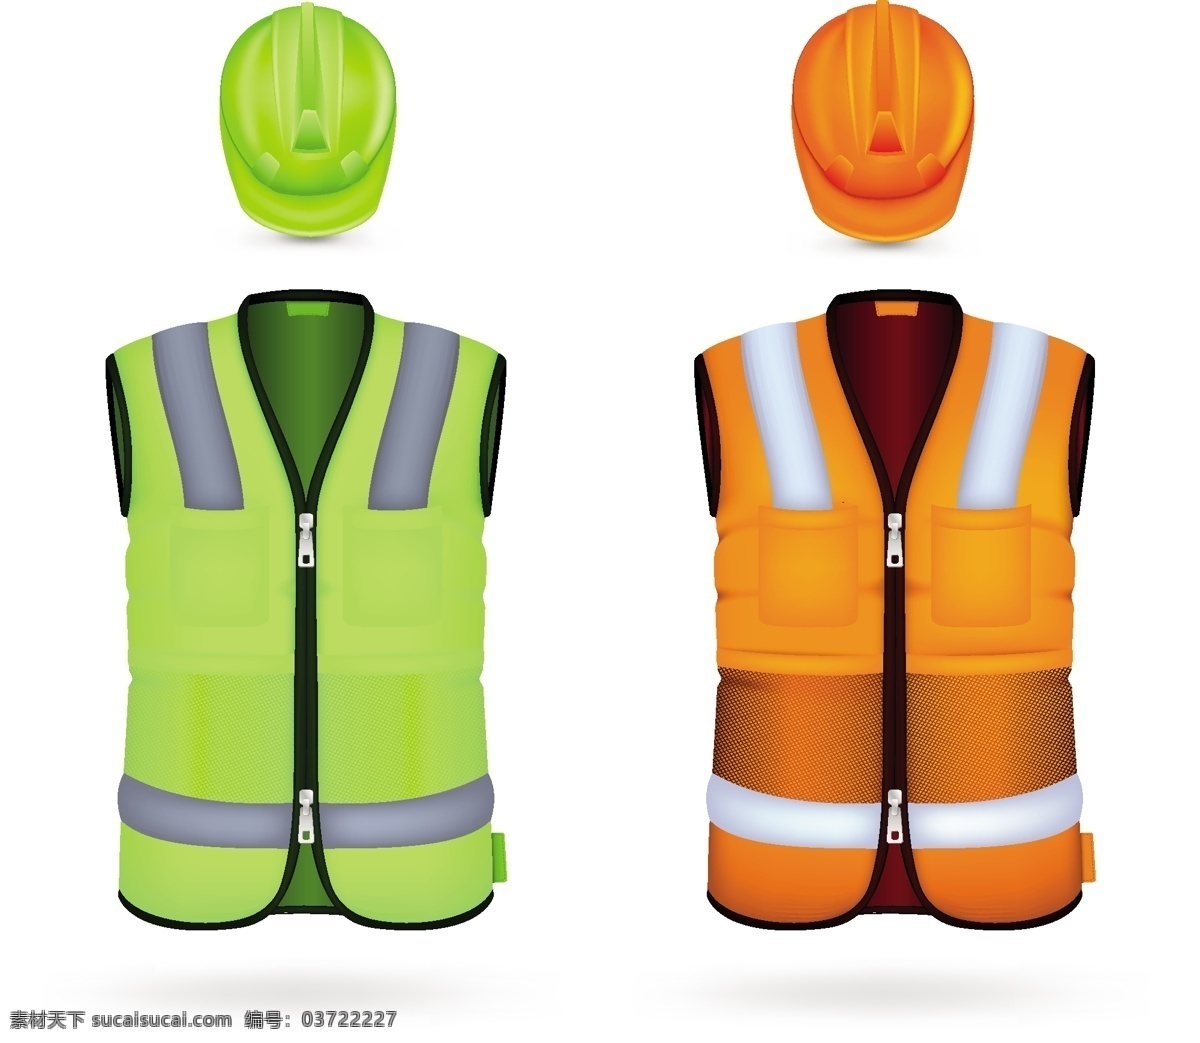 工作 服装设计 矢量图 安全帽 背心 短袖 帽子 上衣 矢量素材 矢量图库 安全服 其他矢量图